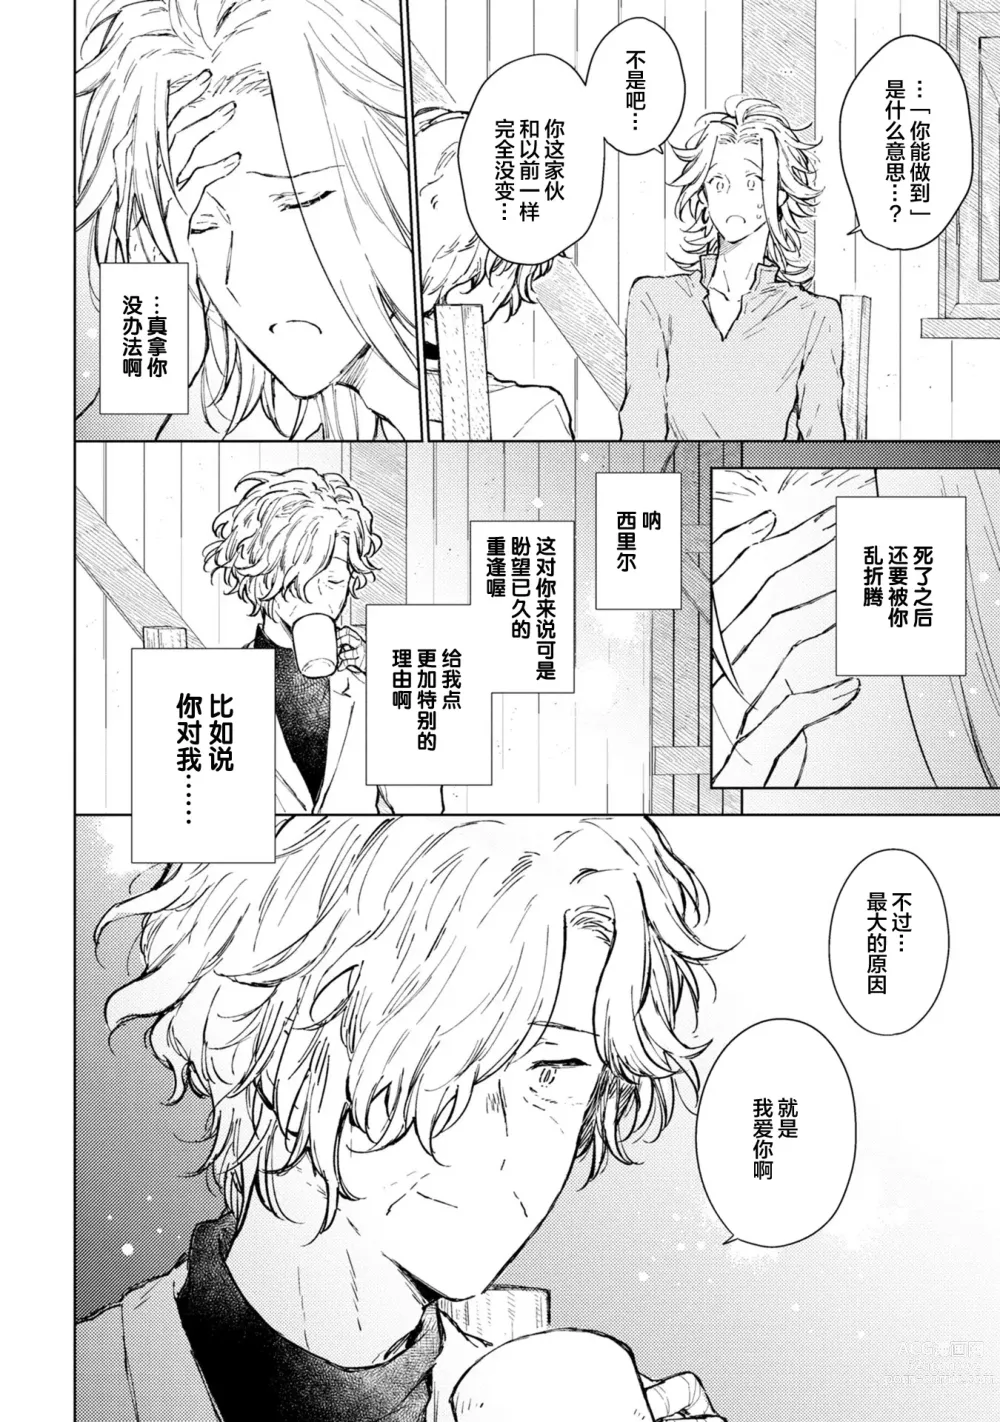 Page 193 of manga 炼金术师与青蓝之灯